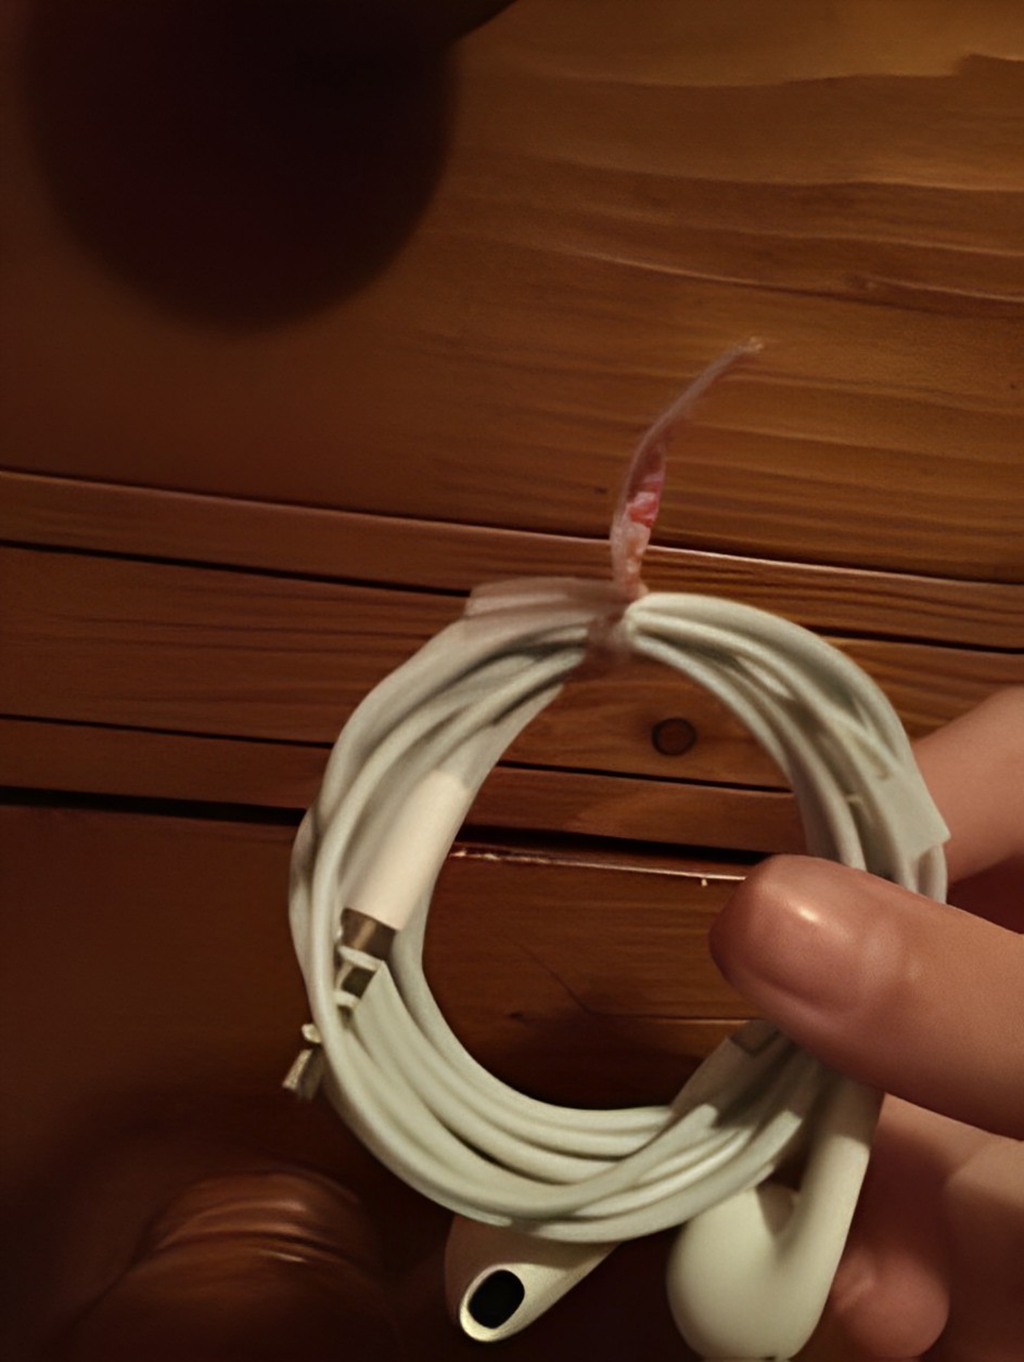 cuộn dây tai nghe bằng kẽm vỏ nhựa